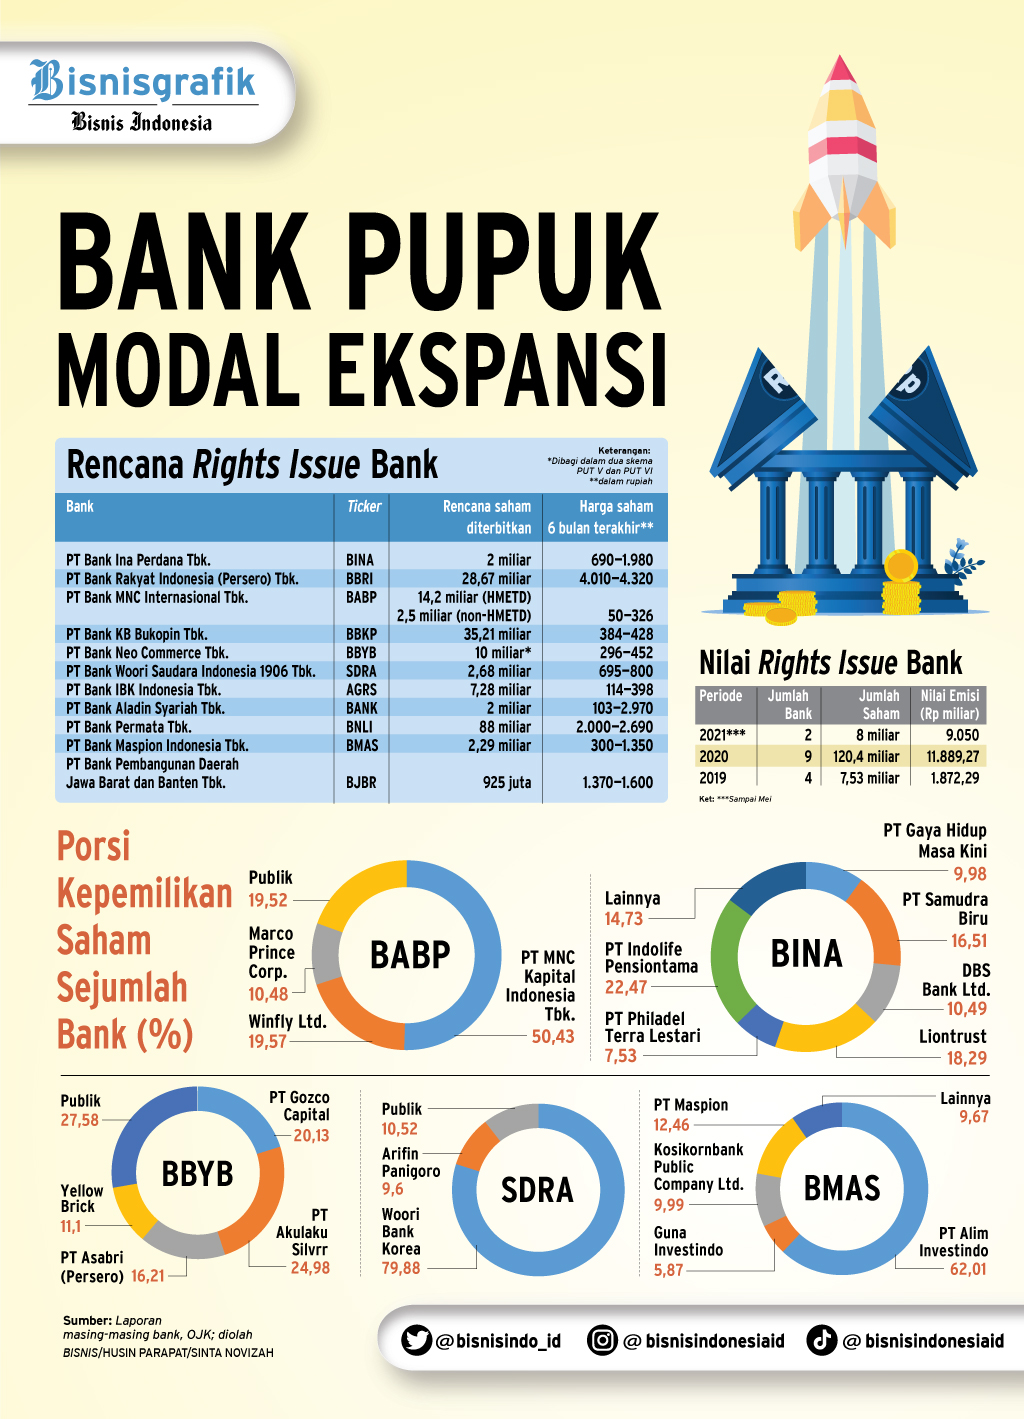 RENCANA RIGHTS ISSUE : Bank Pupuk Modal Ekspansi